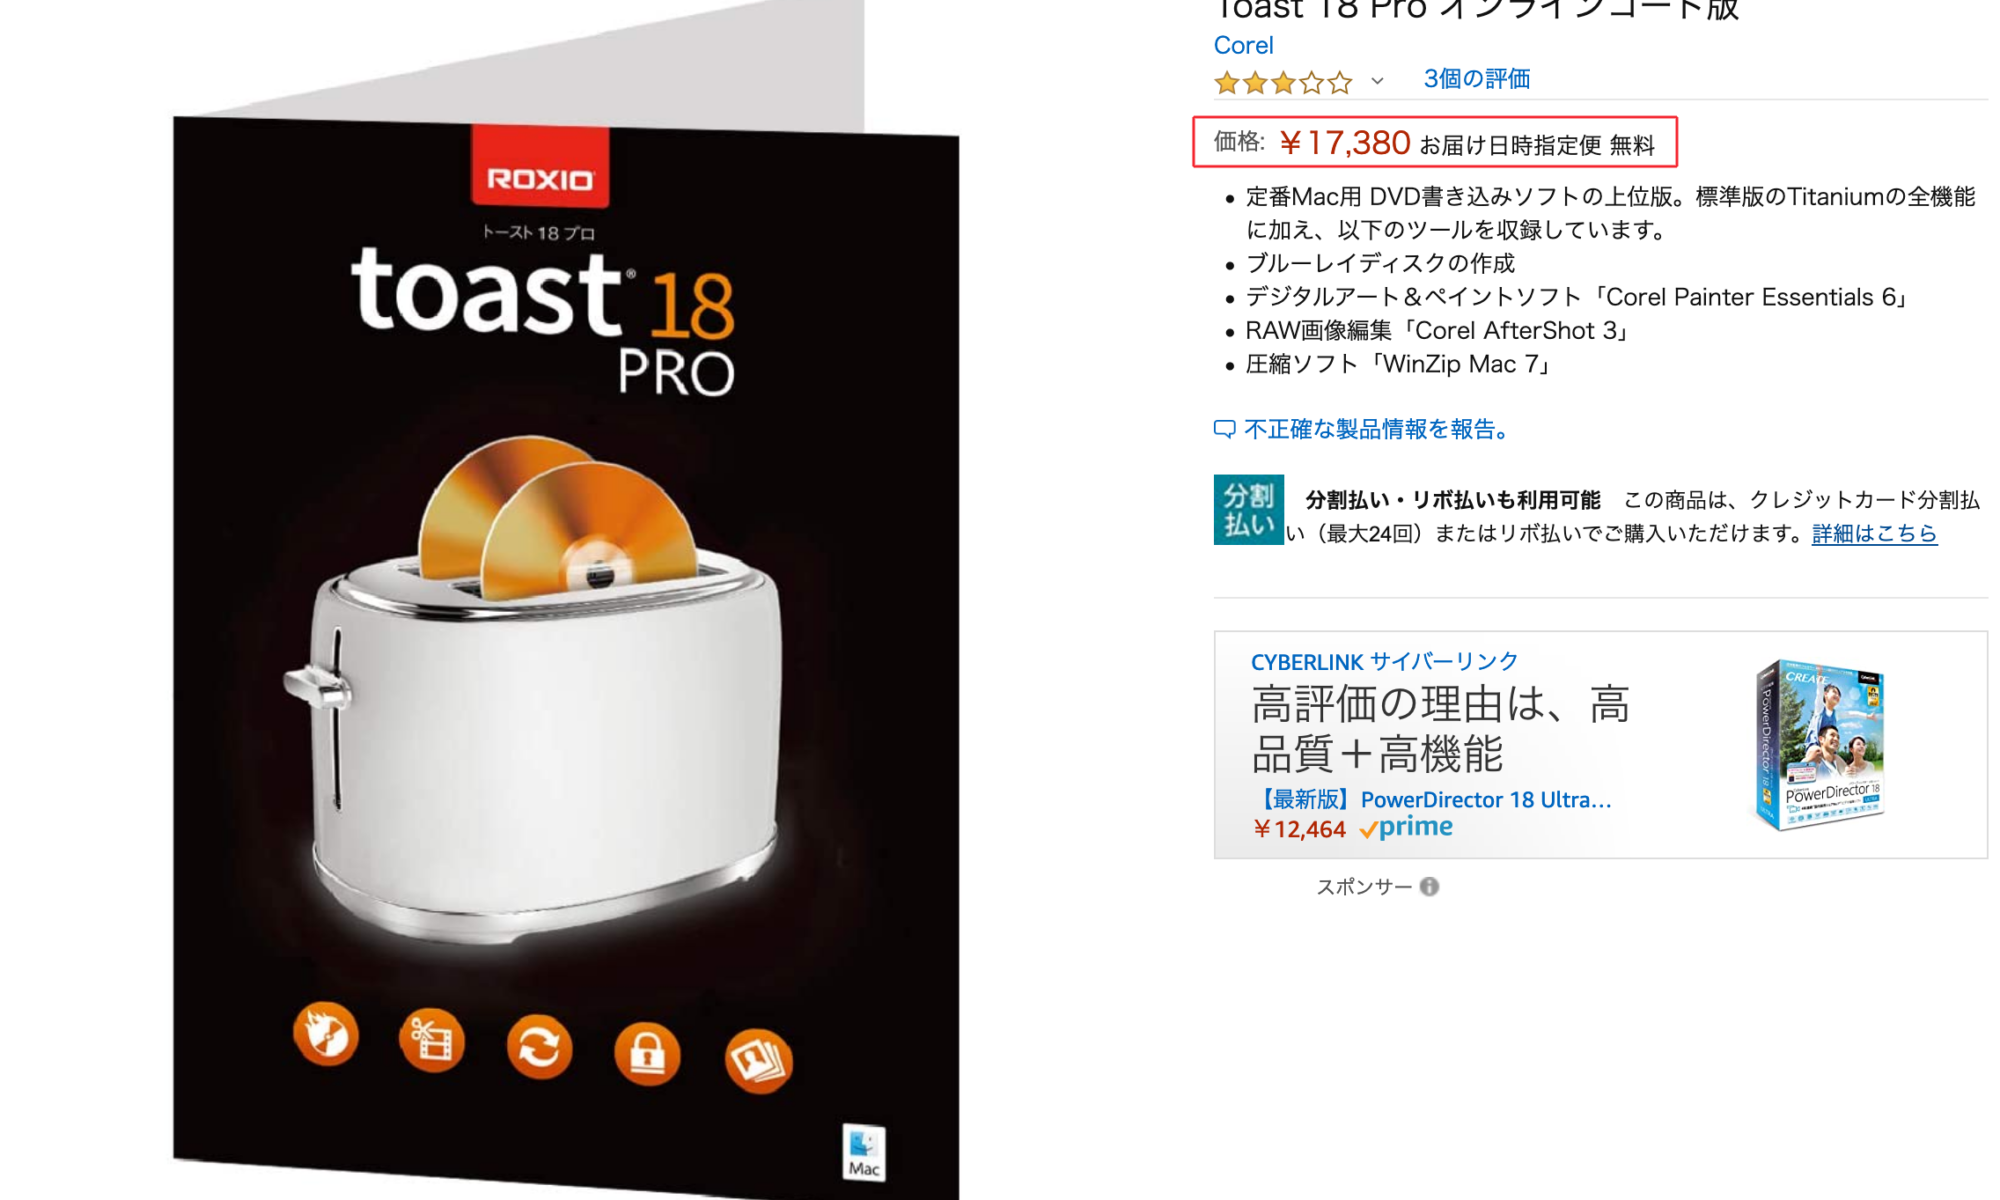 Toast 18 PRO